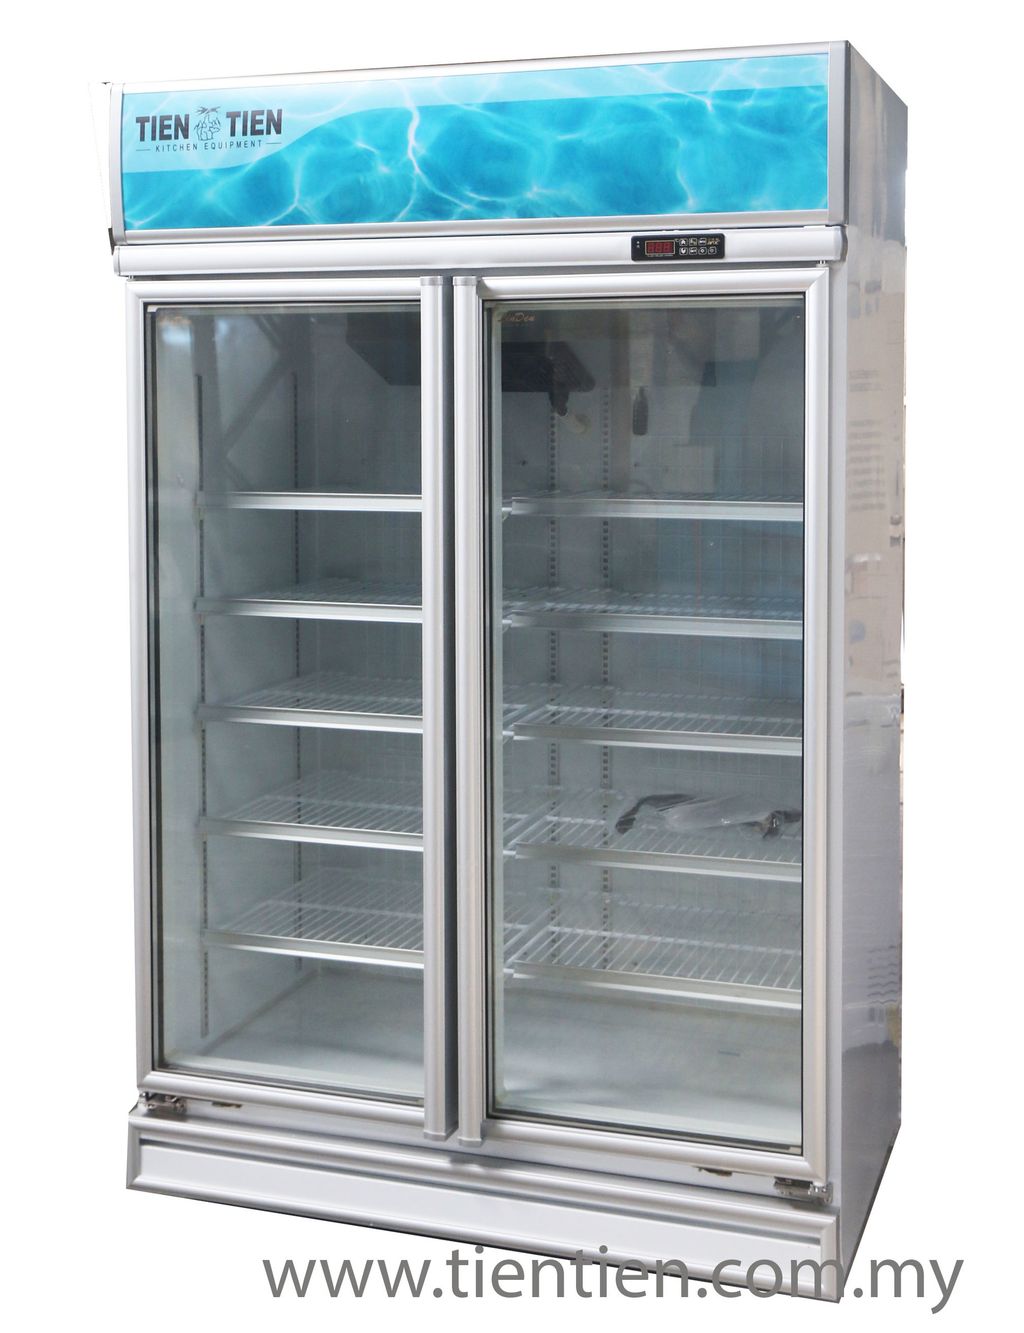 taiwan-import-2-door-chiller-freezer-tientien-malaysia.jpg